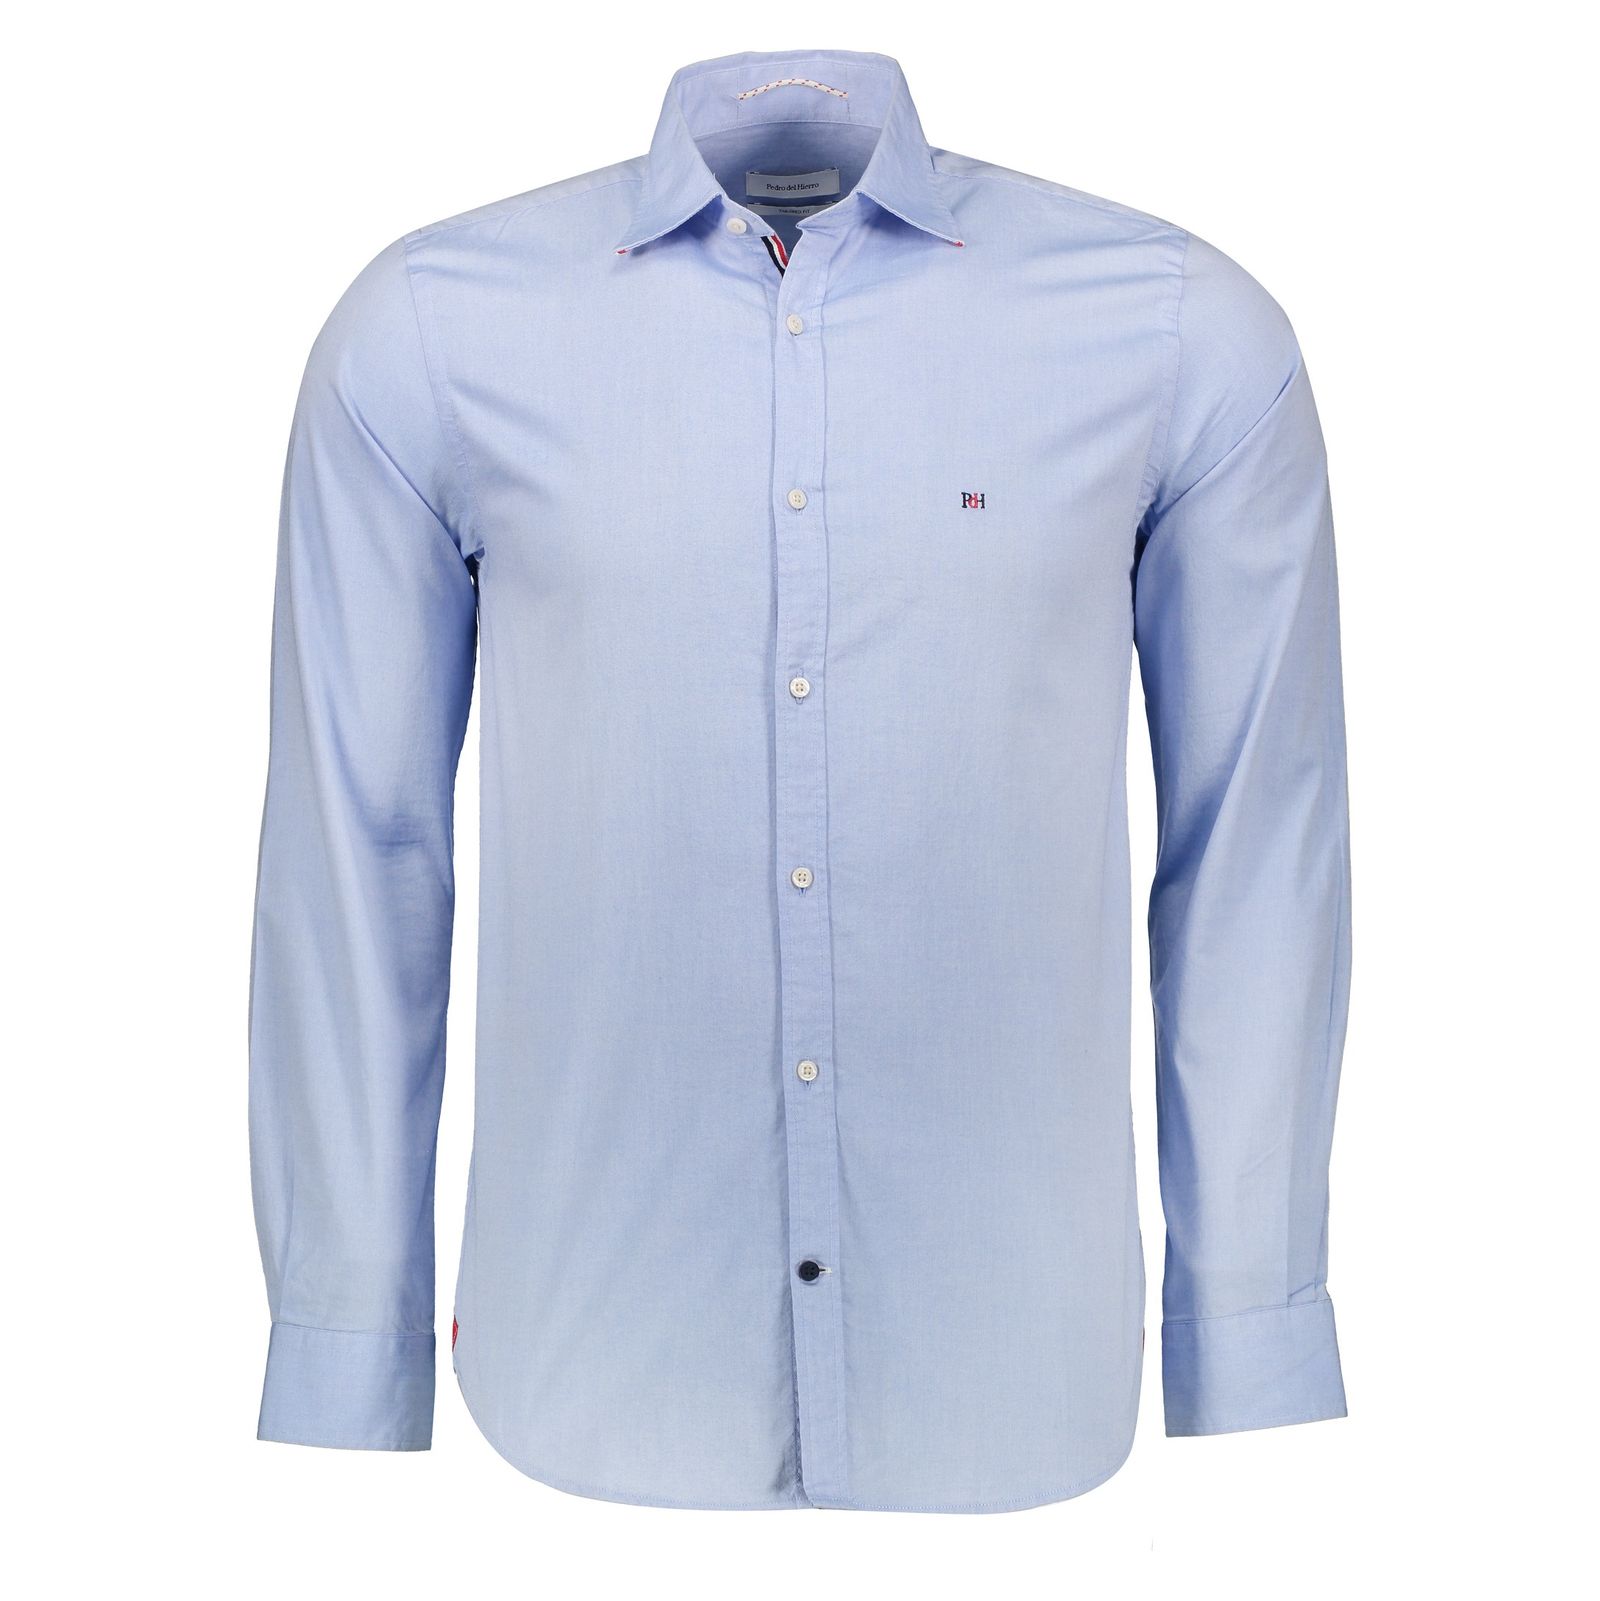 پیراهن مردانه کورتفیل مدل 1842358-12 - آبی - 2